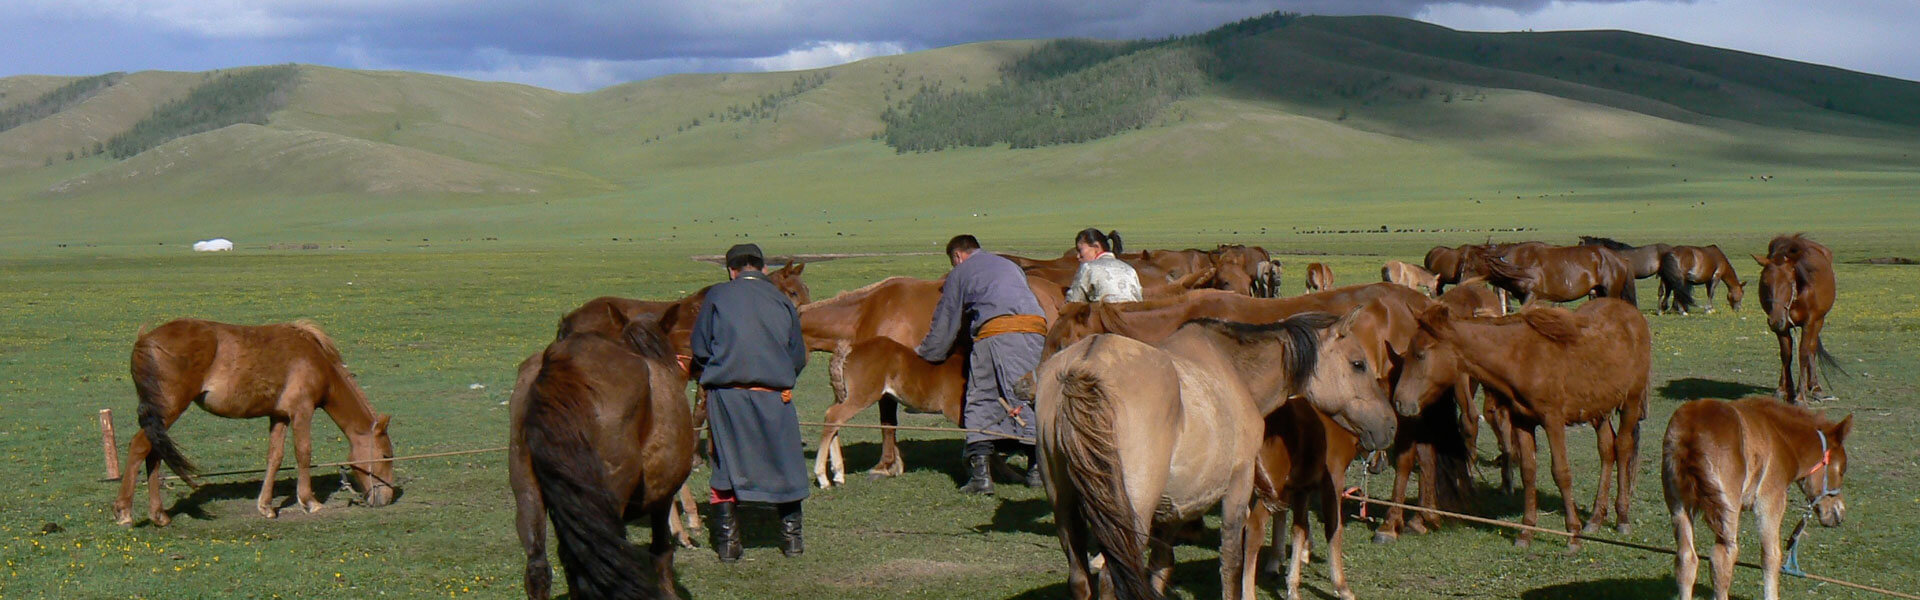 Mongolie rondreis